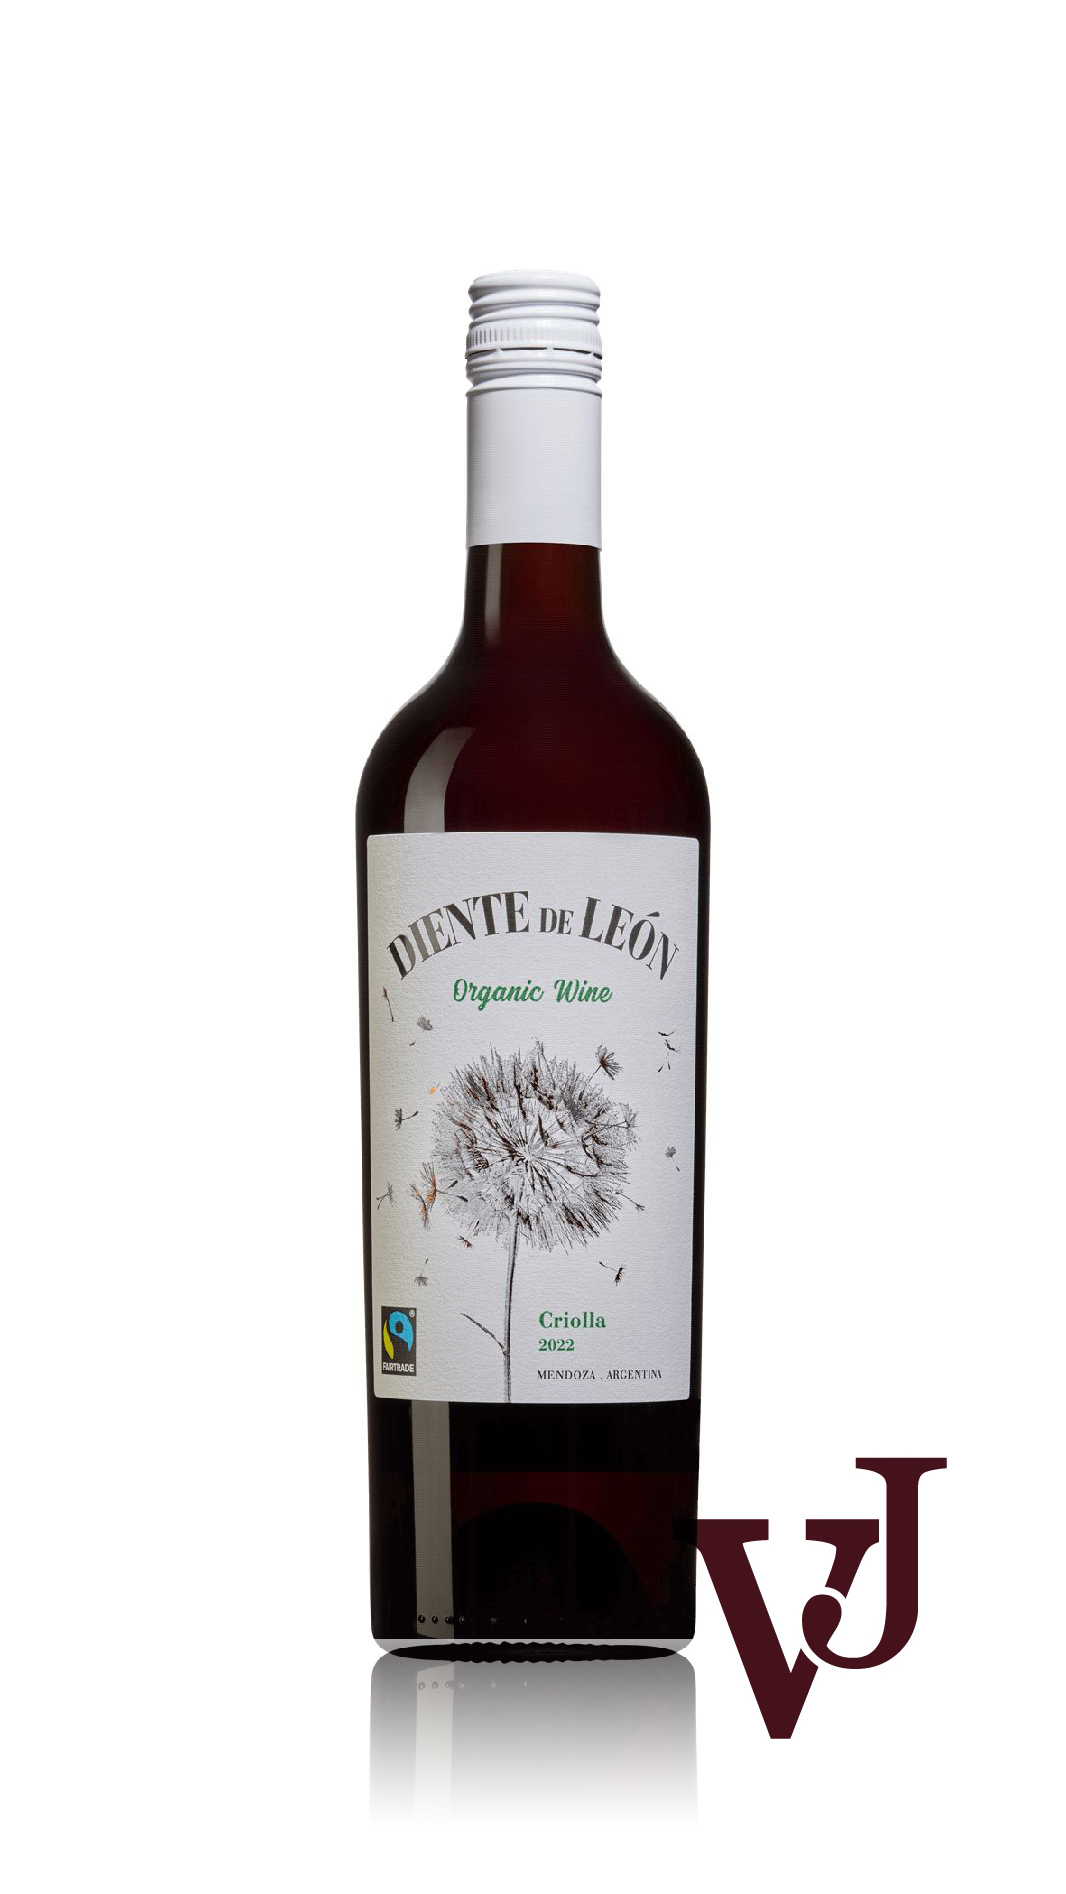 Rött Vin - Diente de León Criolla 2022 artikel nummer 240501 från producenten Montlaiz från området Argentina - Vinjournalen.se